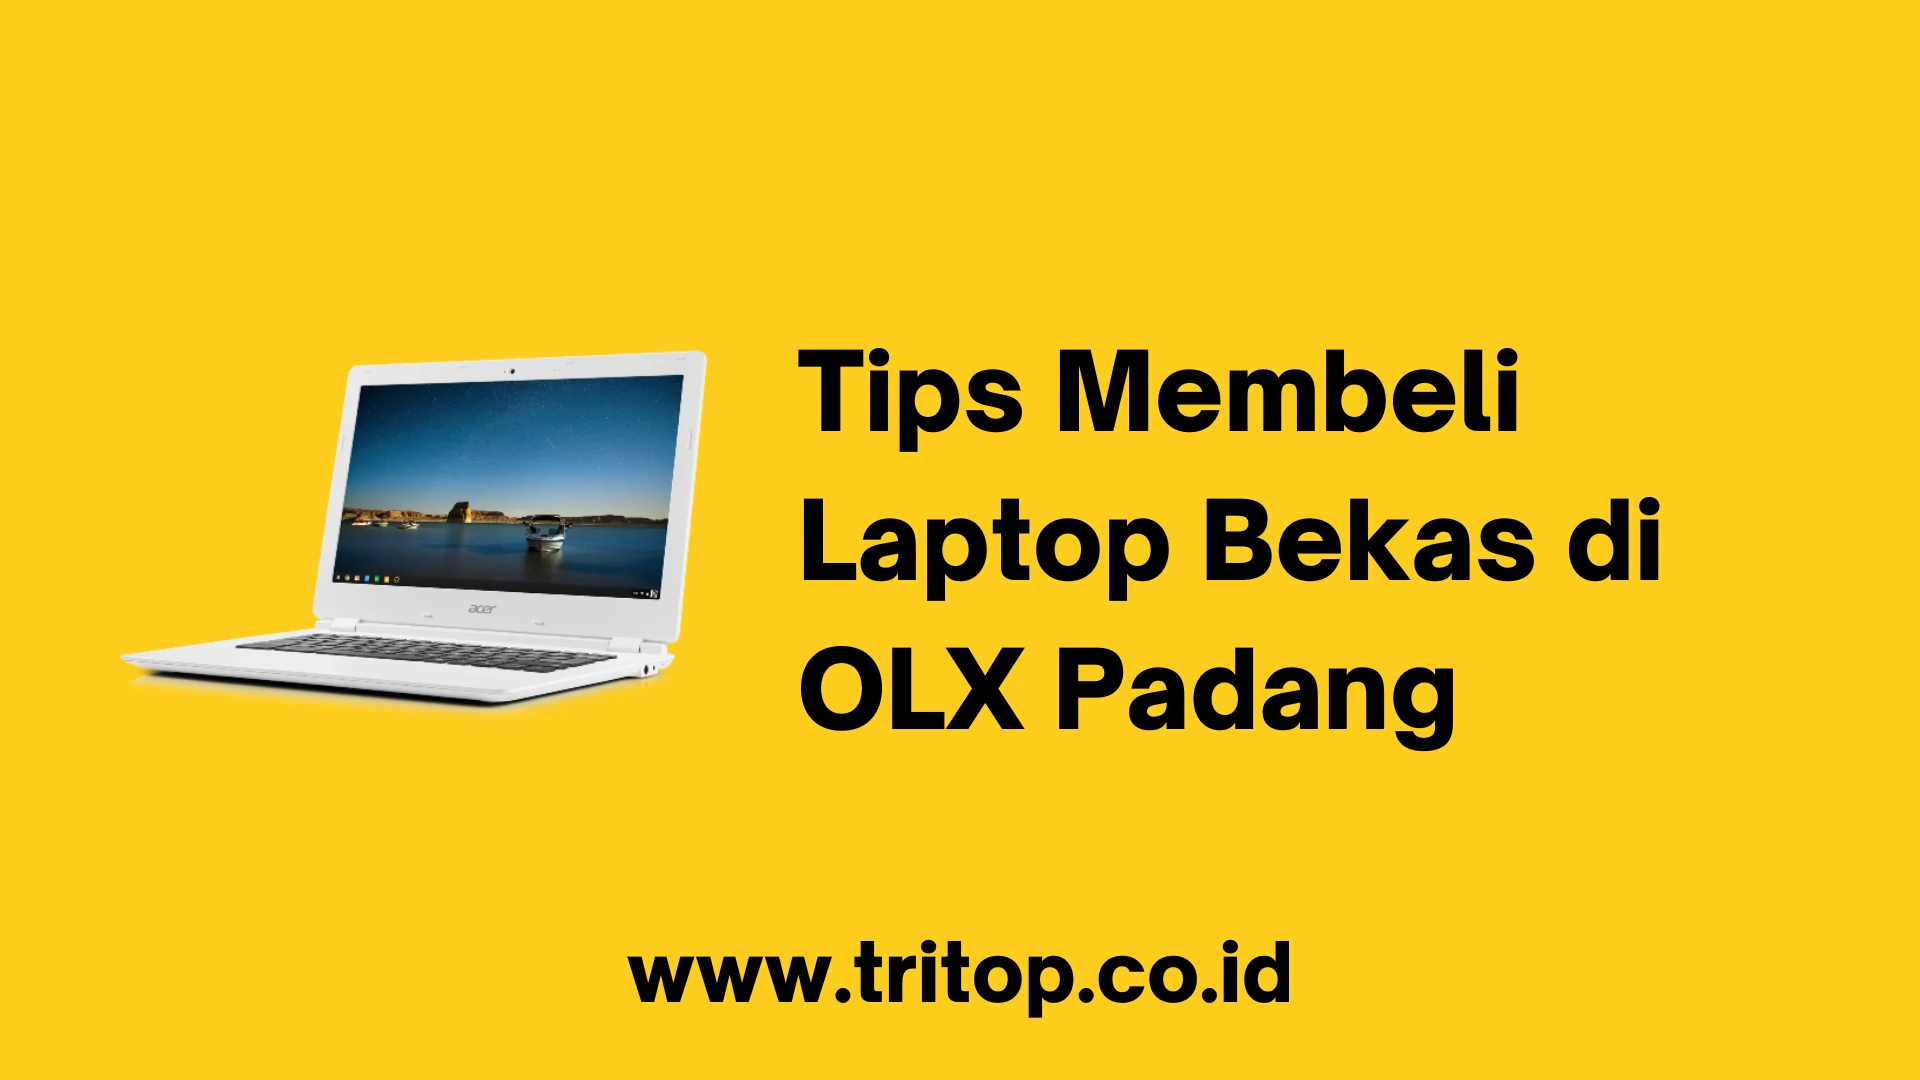 OLX Laptop Bekas Padang